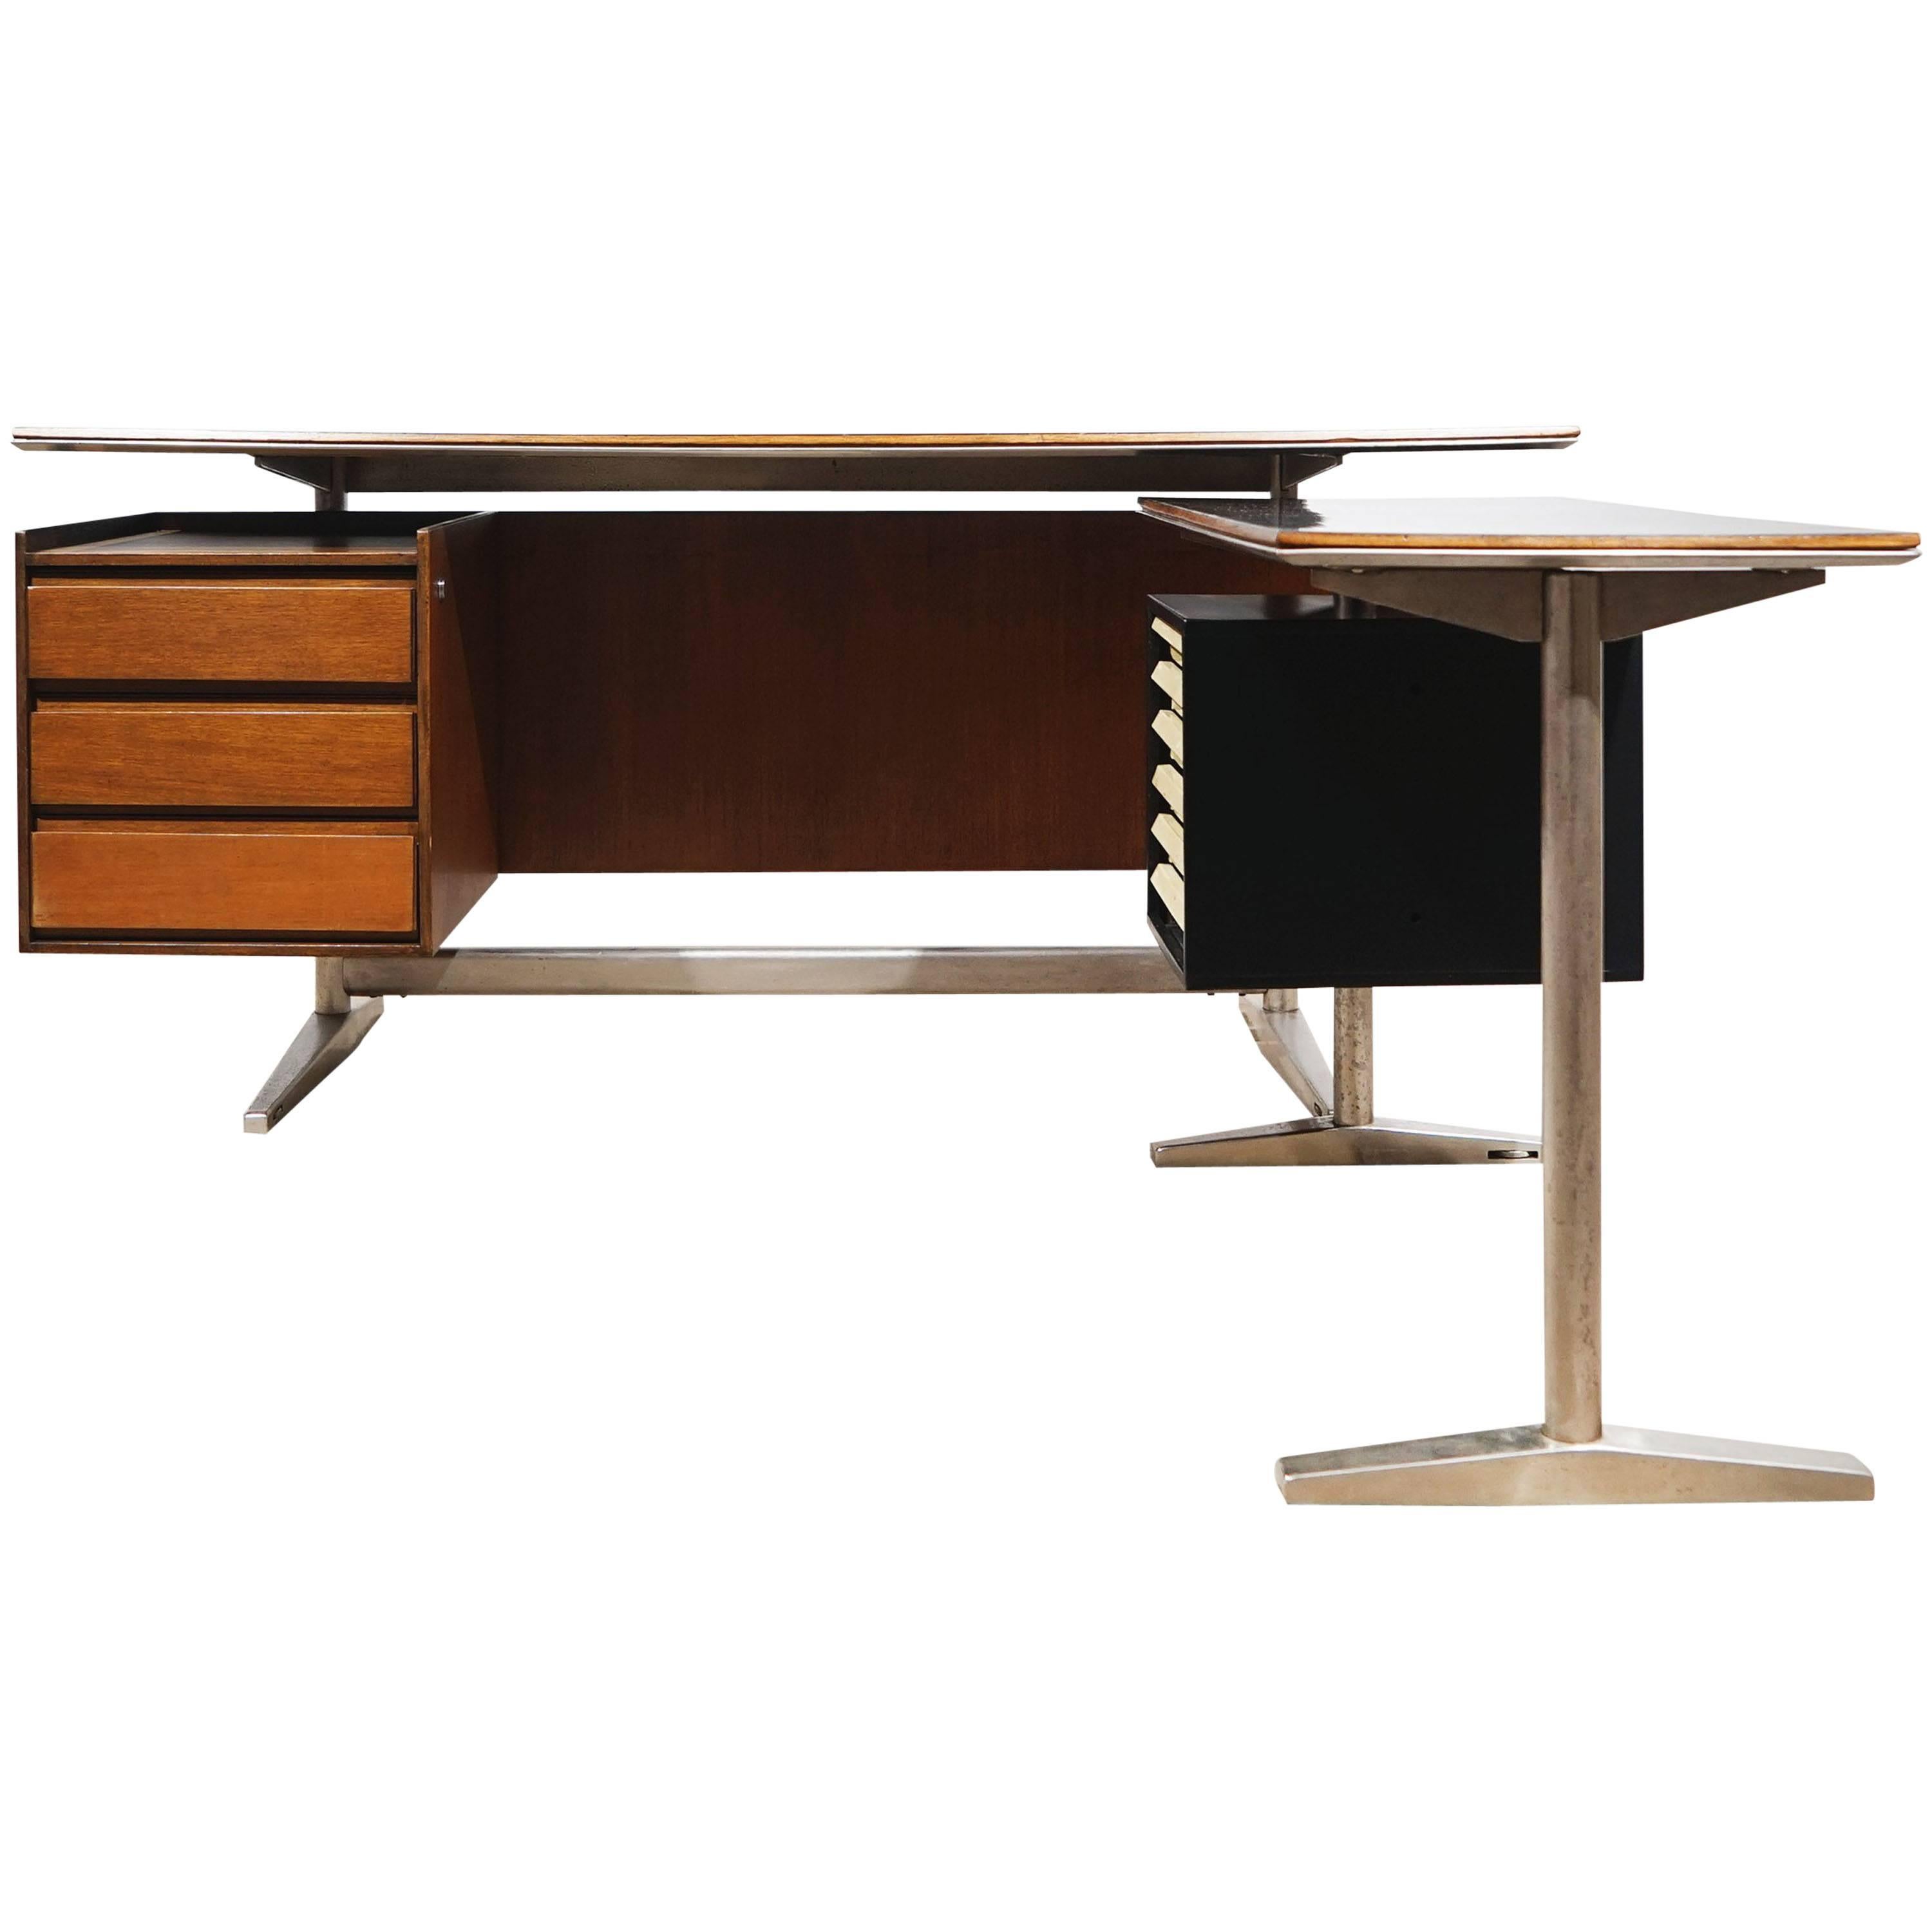 Desk by Gio Ponti & Alberto Rosselli, Rima Padova, Italy, circa 1955